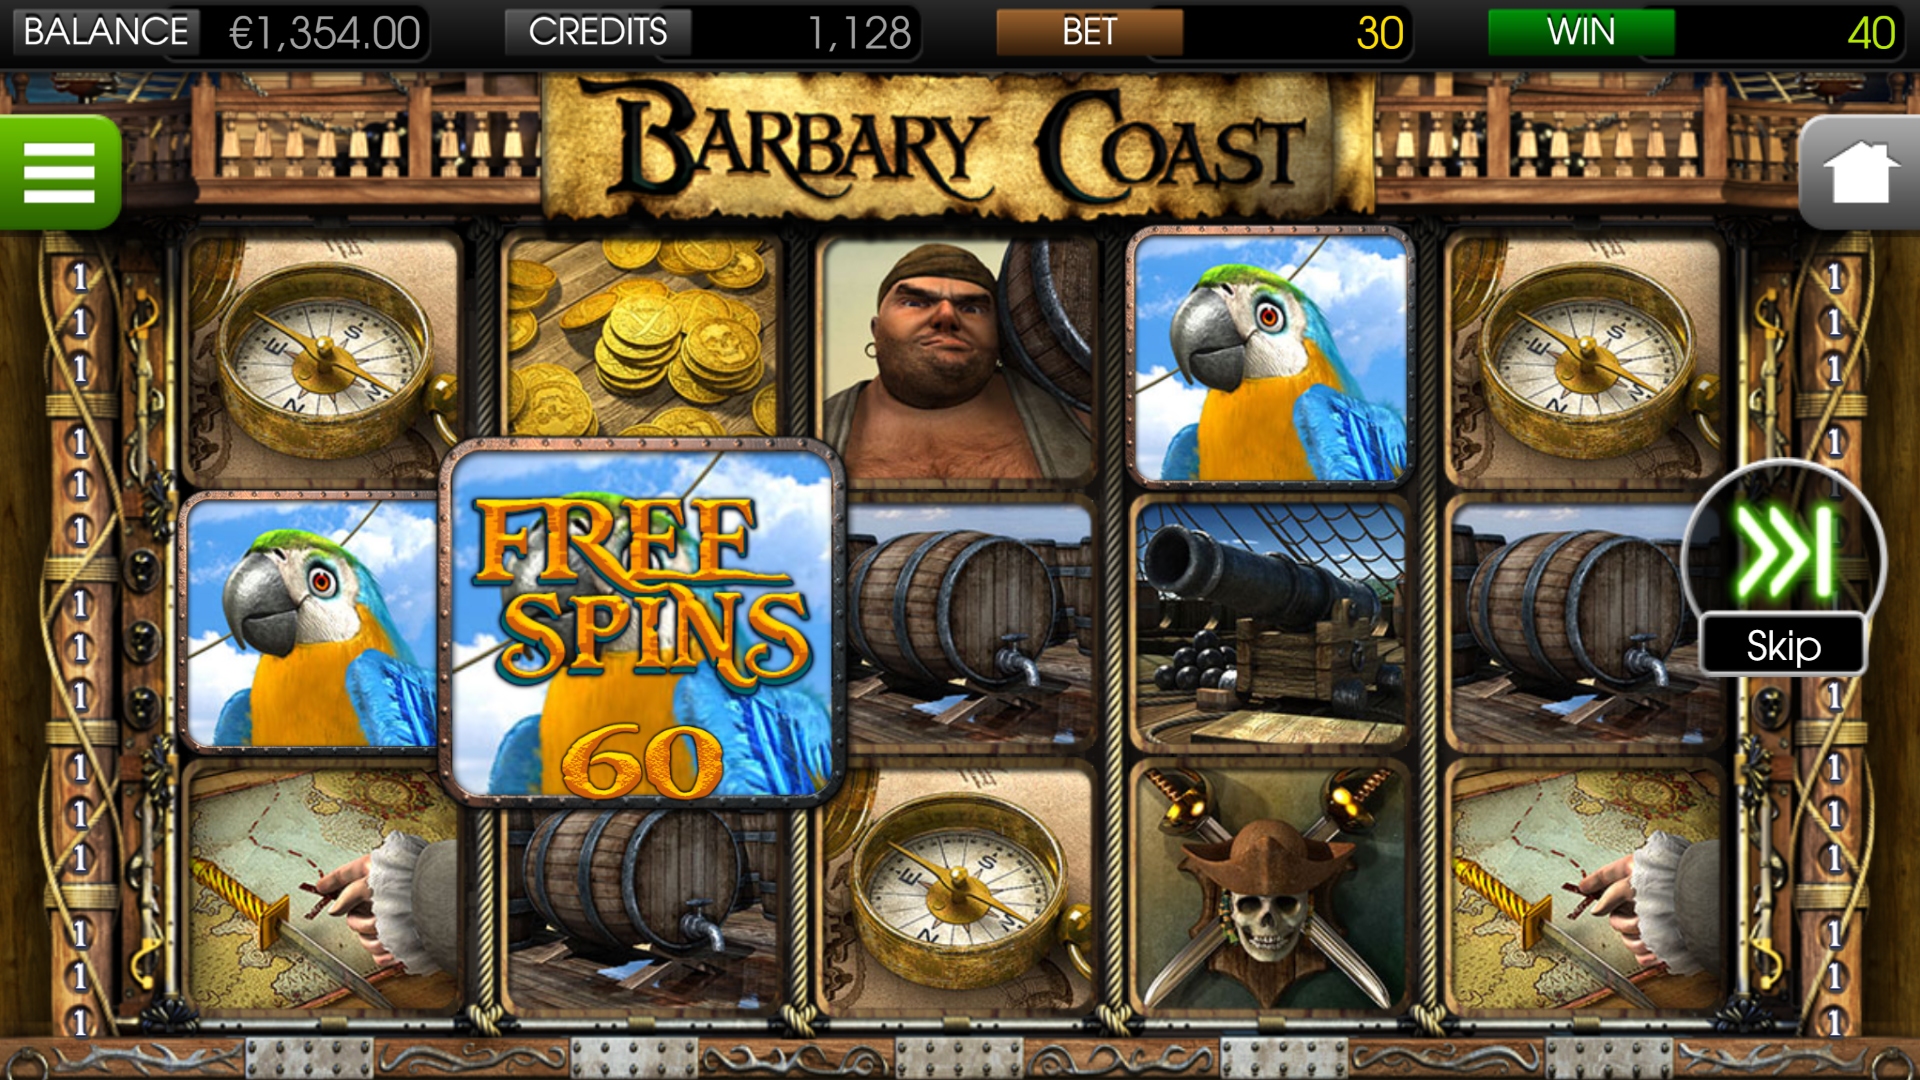 Barbary Coast - Free Spins